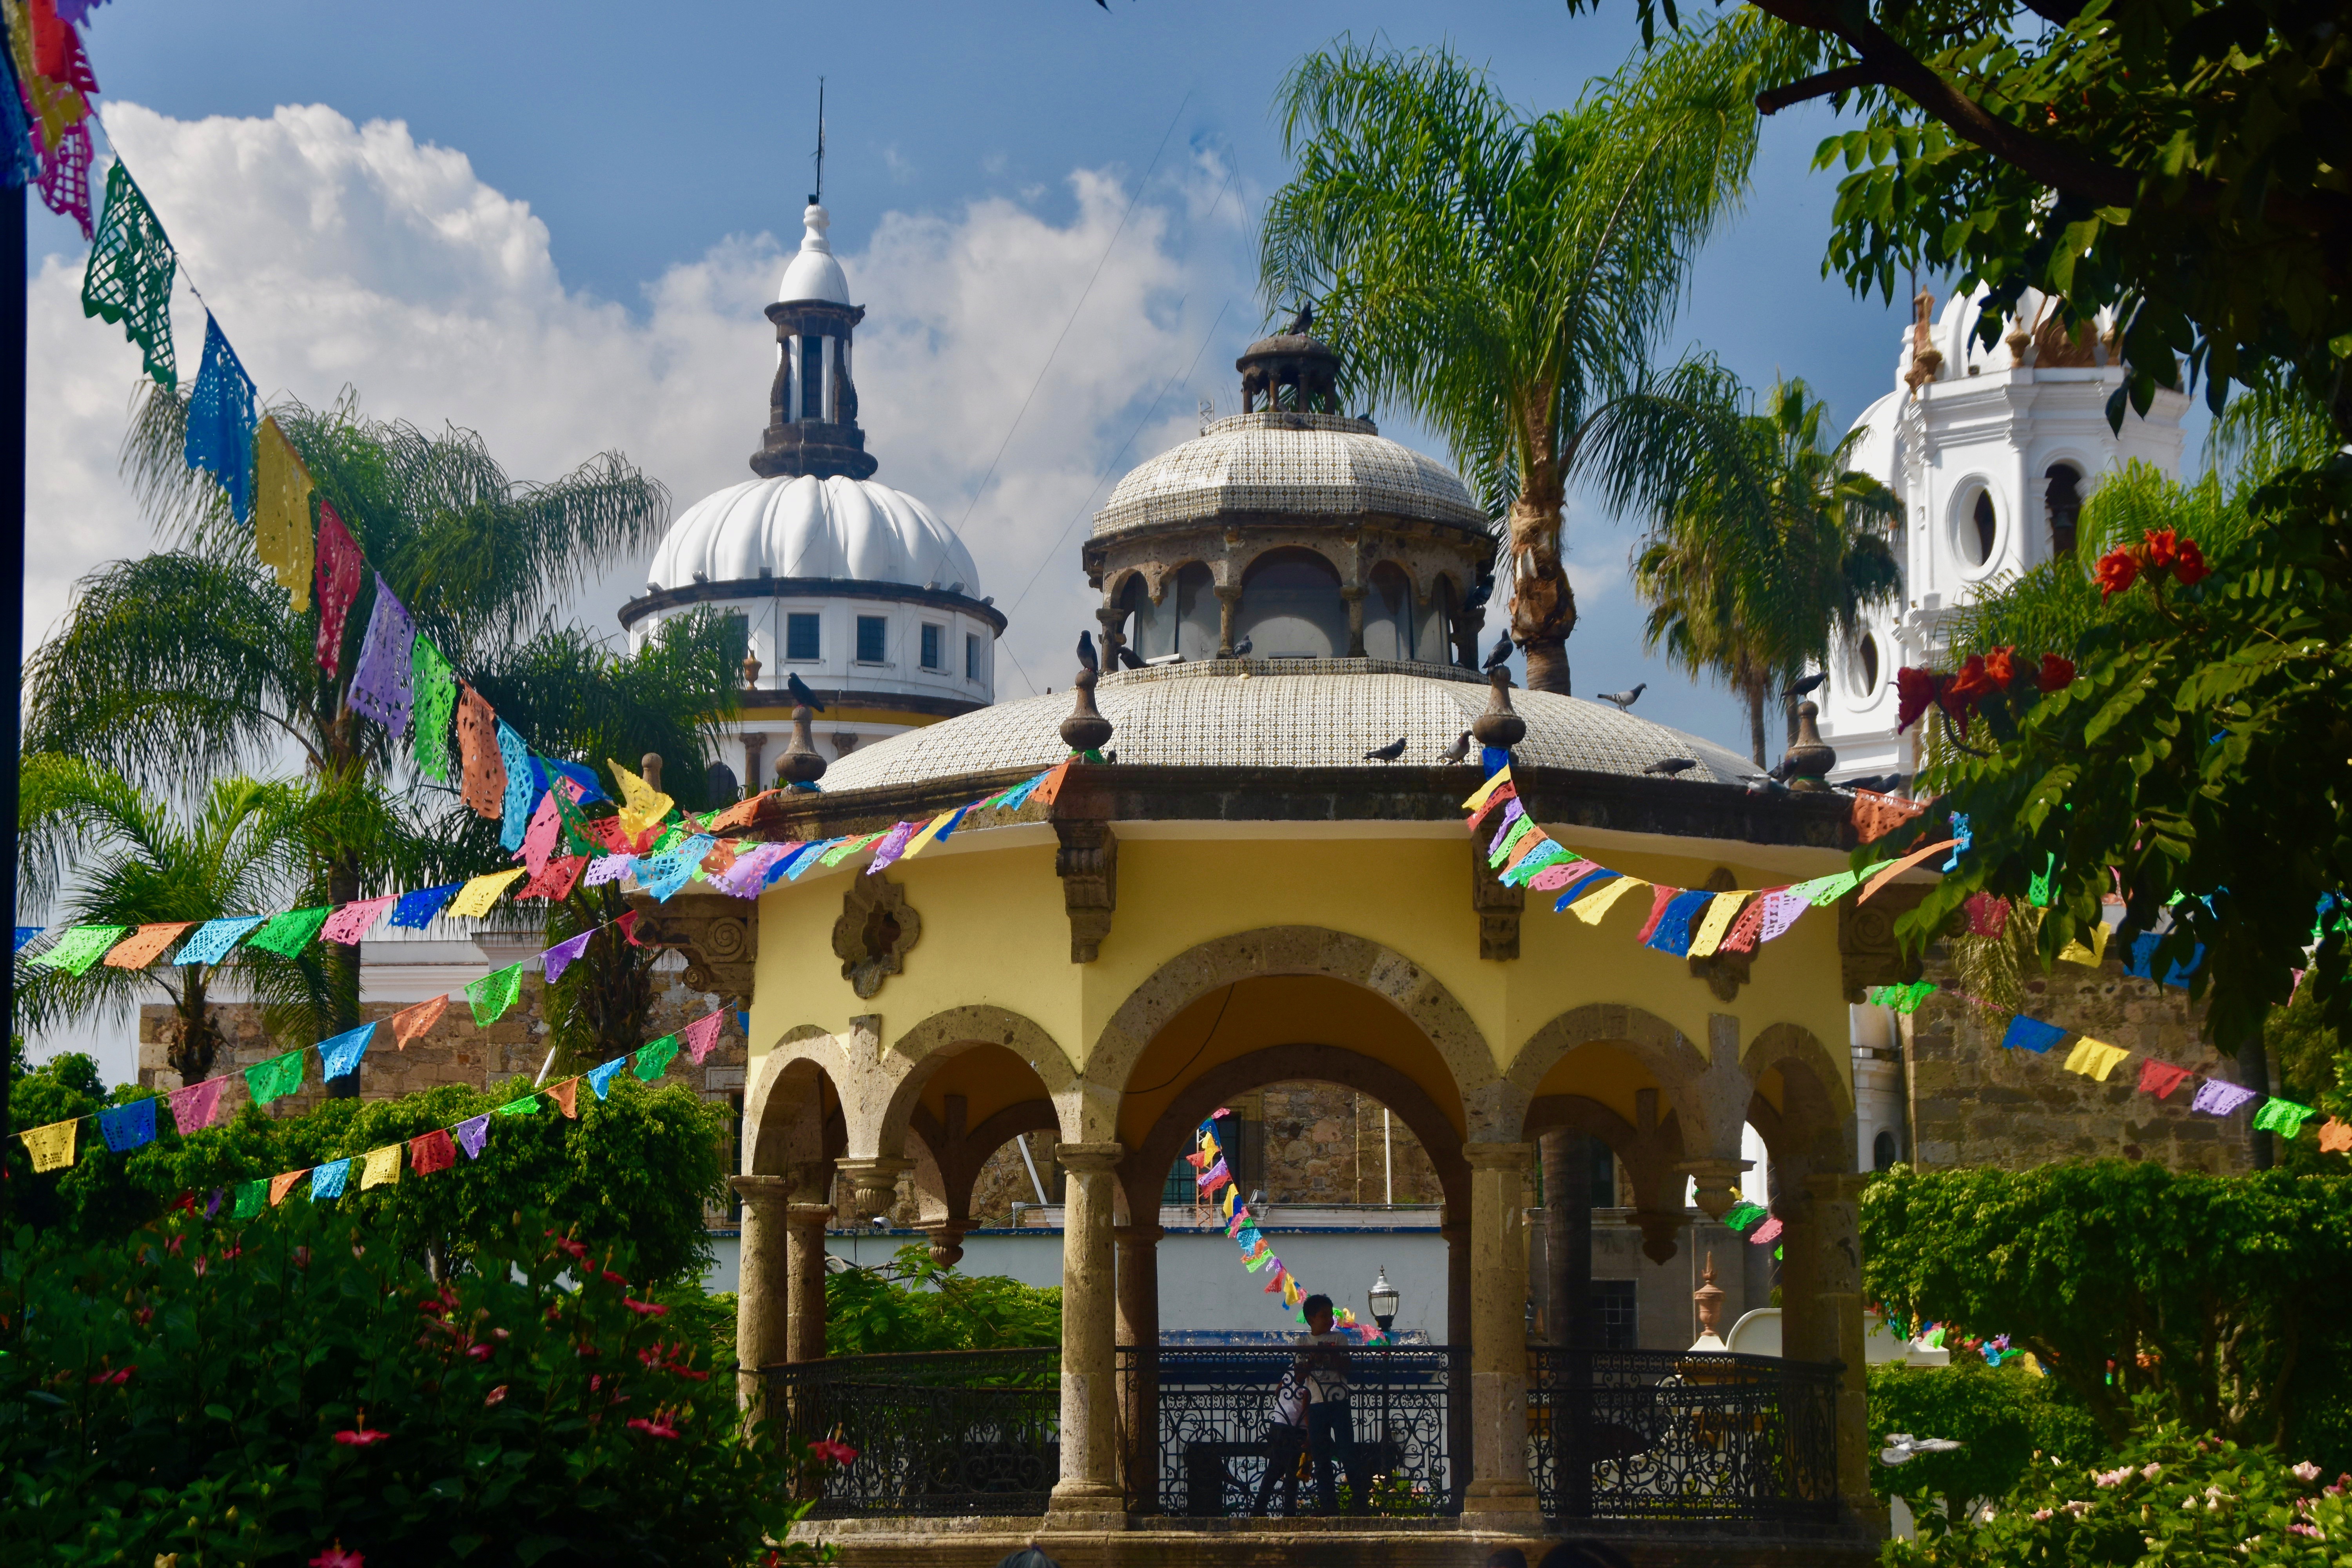 Church dome in Tzintzuntzan, Mexico